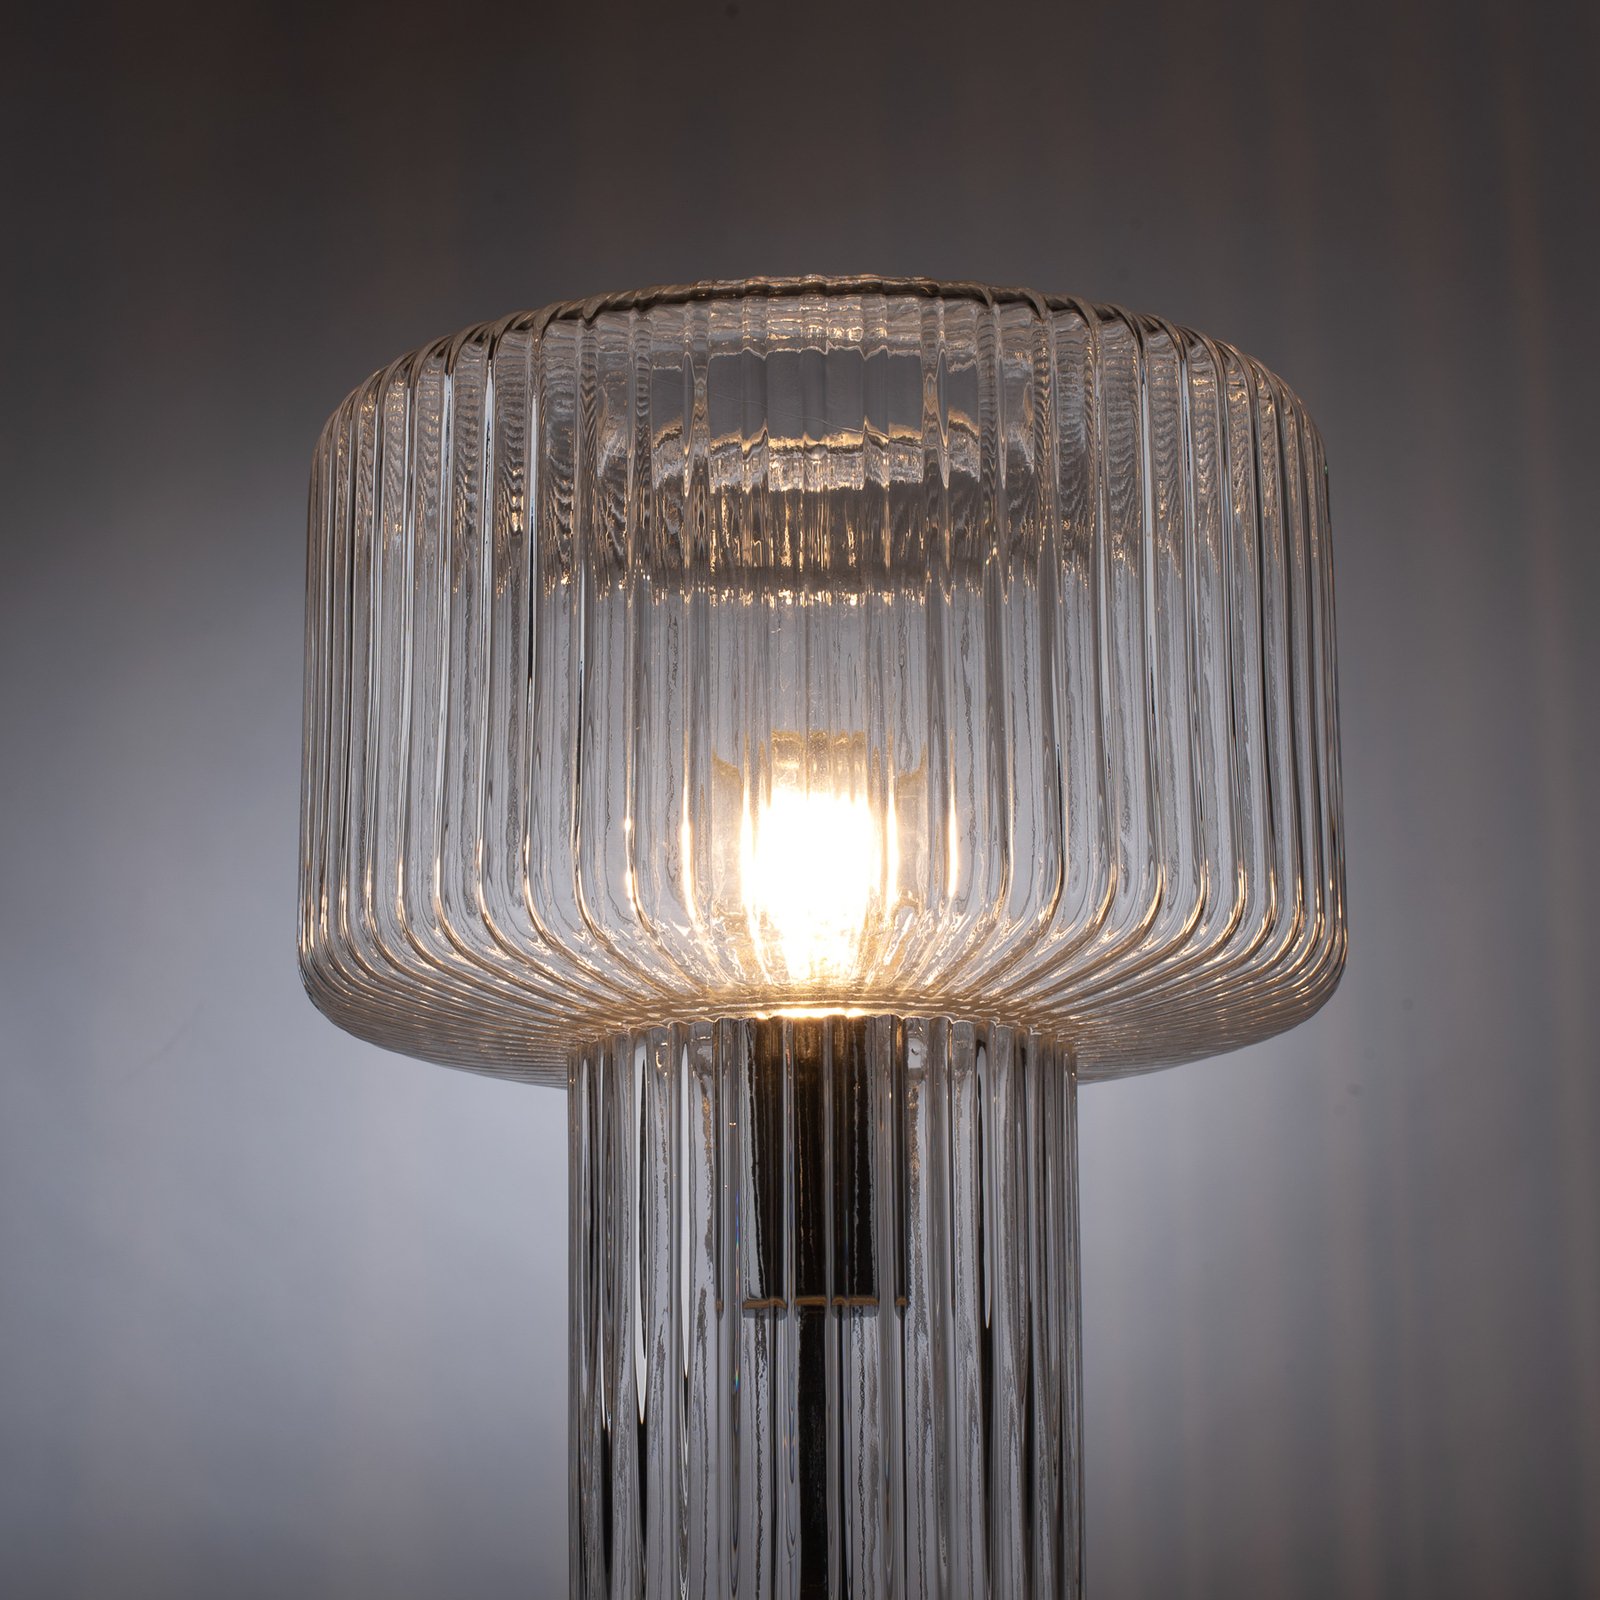 Tafellamp Fungus van glas, transparant